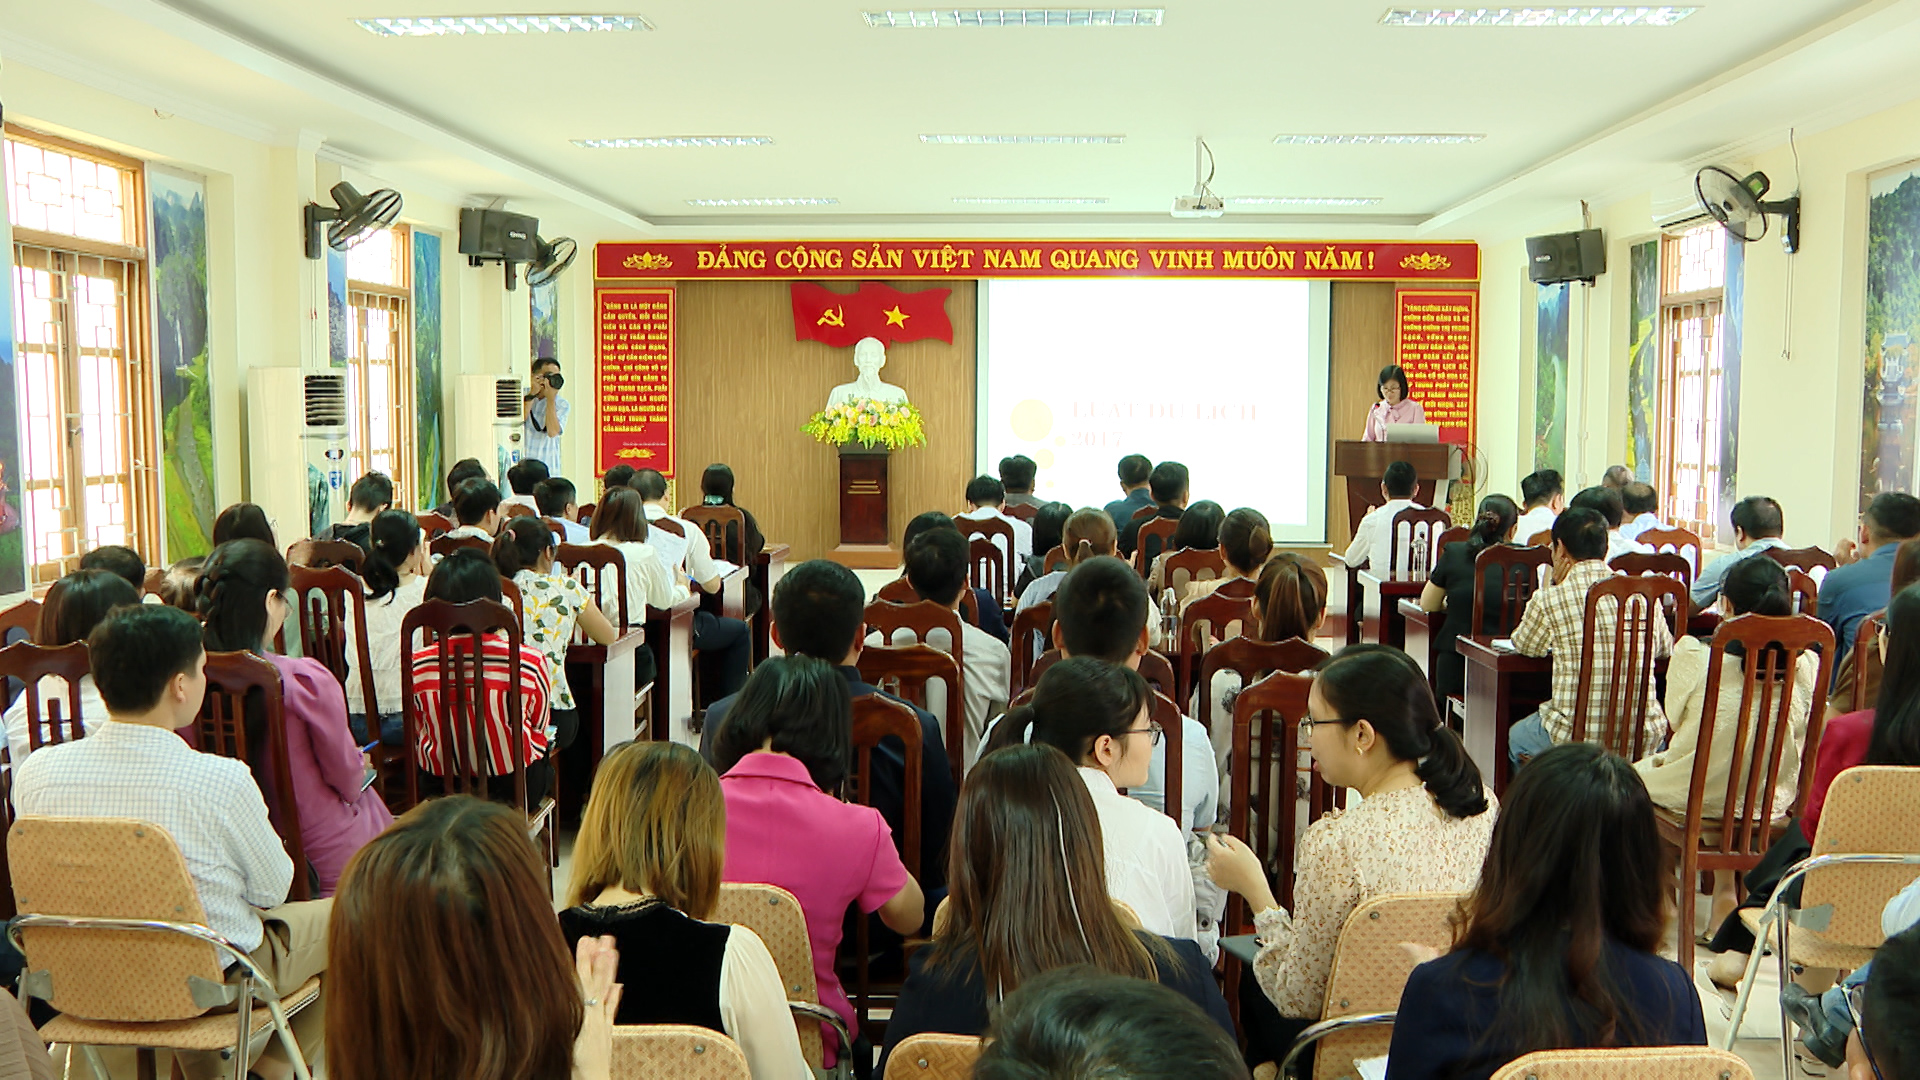 Phổ biến pháp luật trong hoạt động kinh doanh dịch vụ du lịch tại Ninh Bình - Ảnh 1.